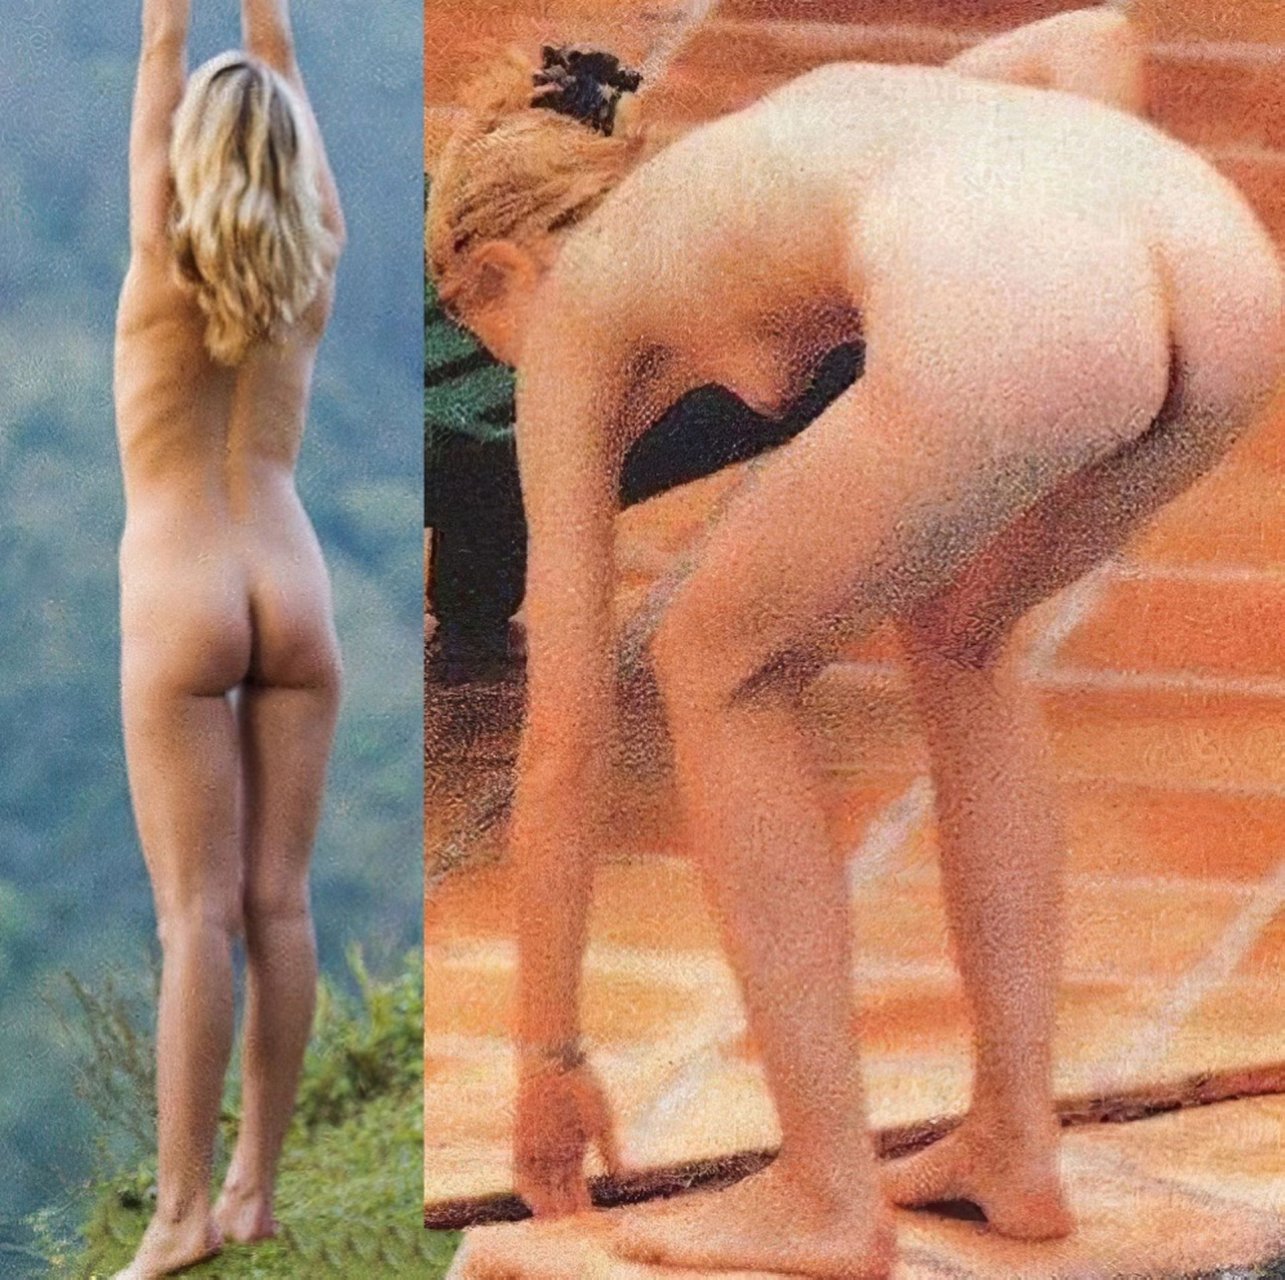 Gwyneth paltrow hot nude-tube porn video.